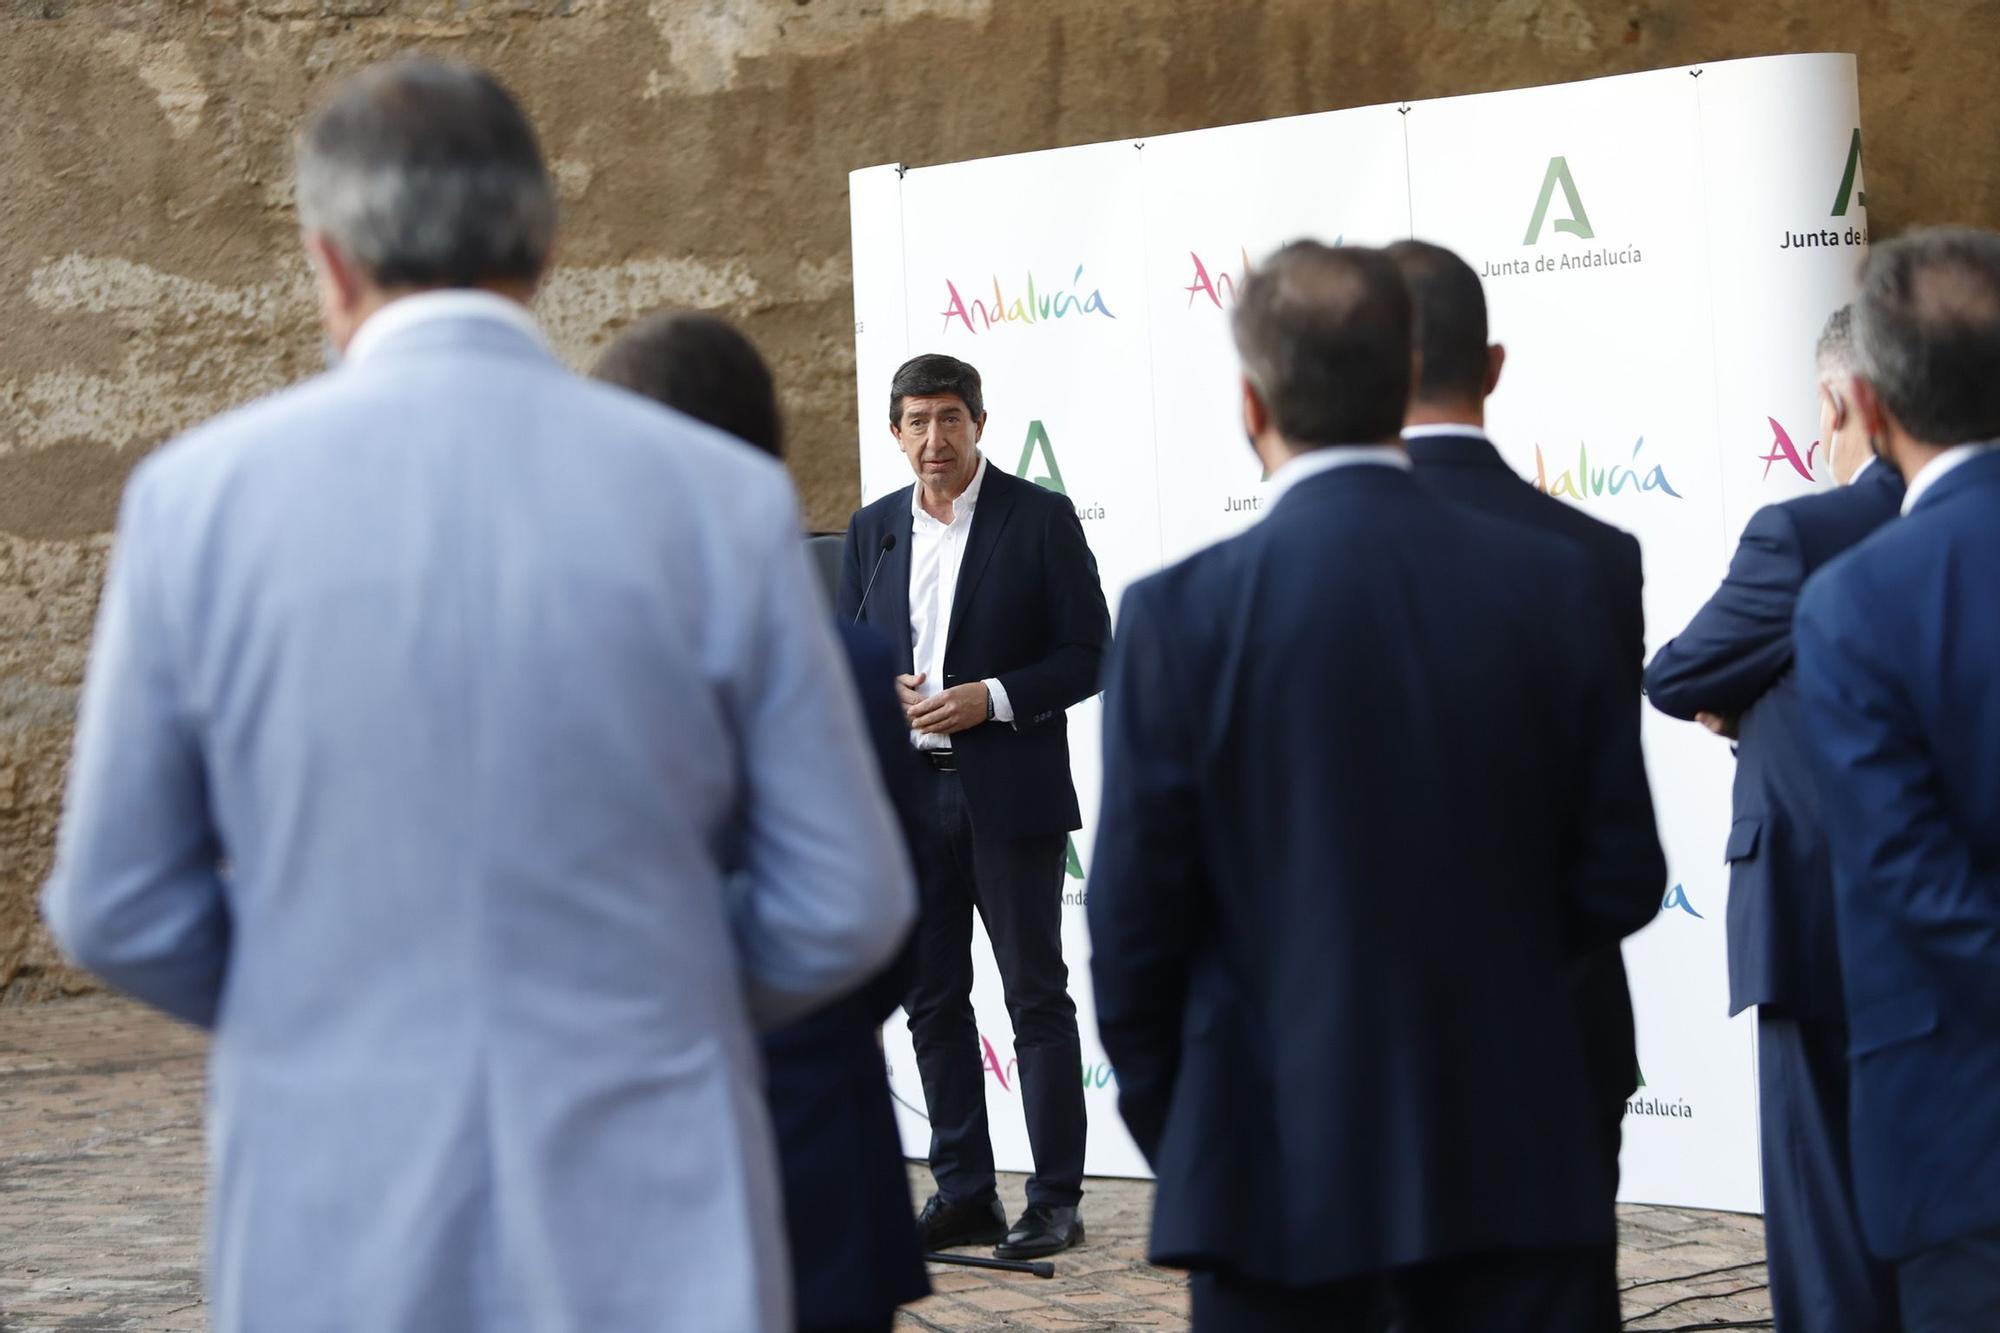 Andalucía presenta su nueva campaña turística con Antonio Banderas